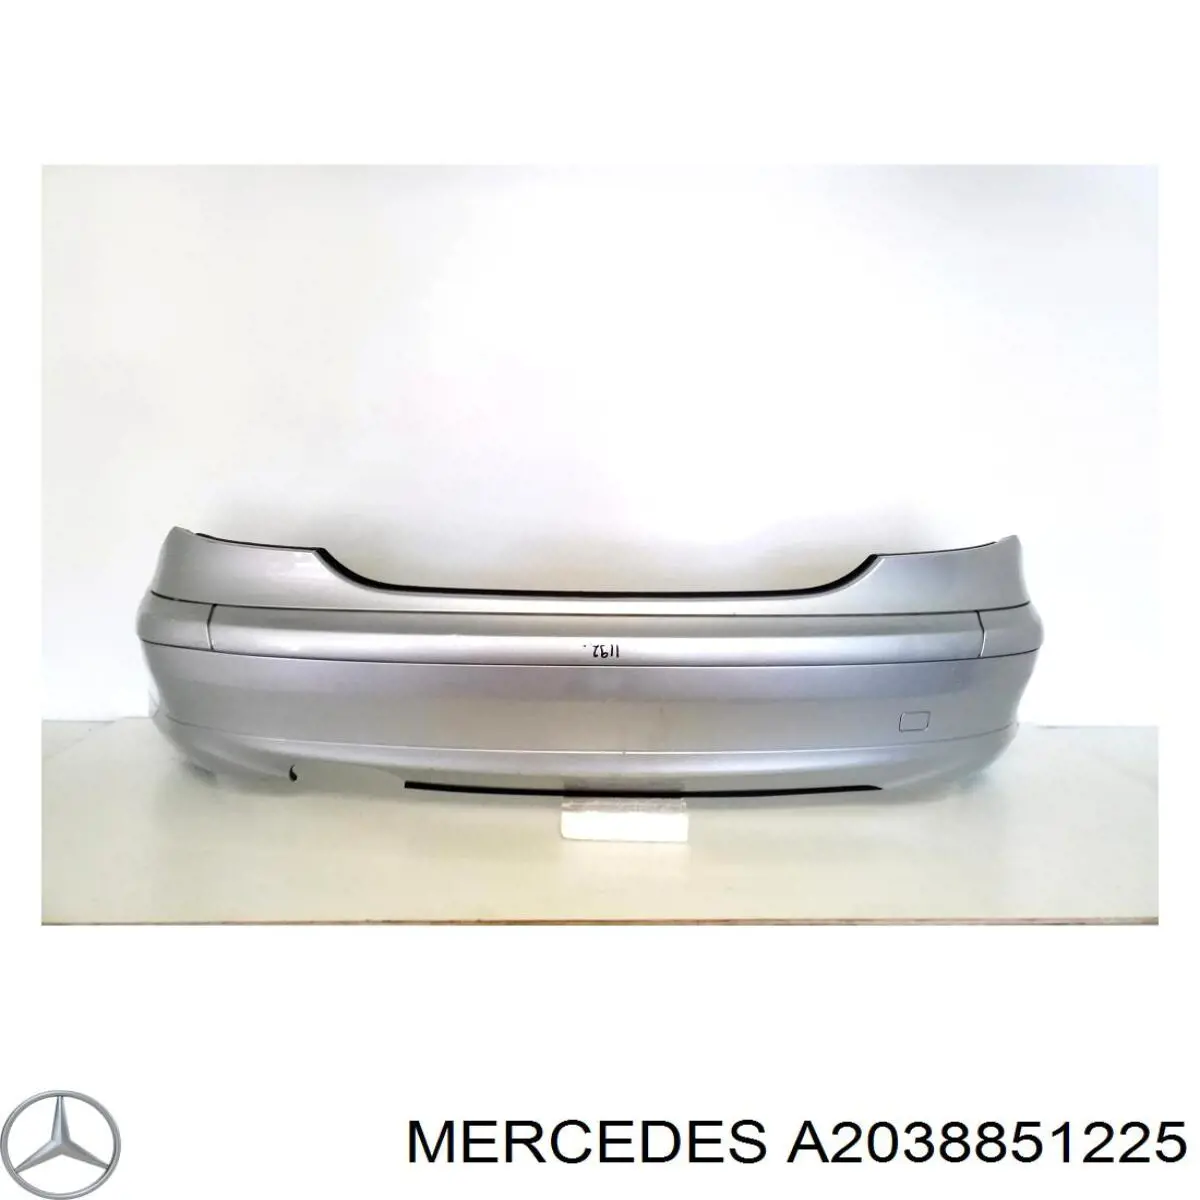 2038851225 Mercedes parachoques trasero